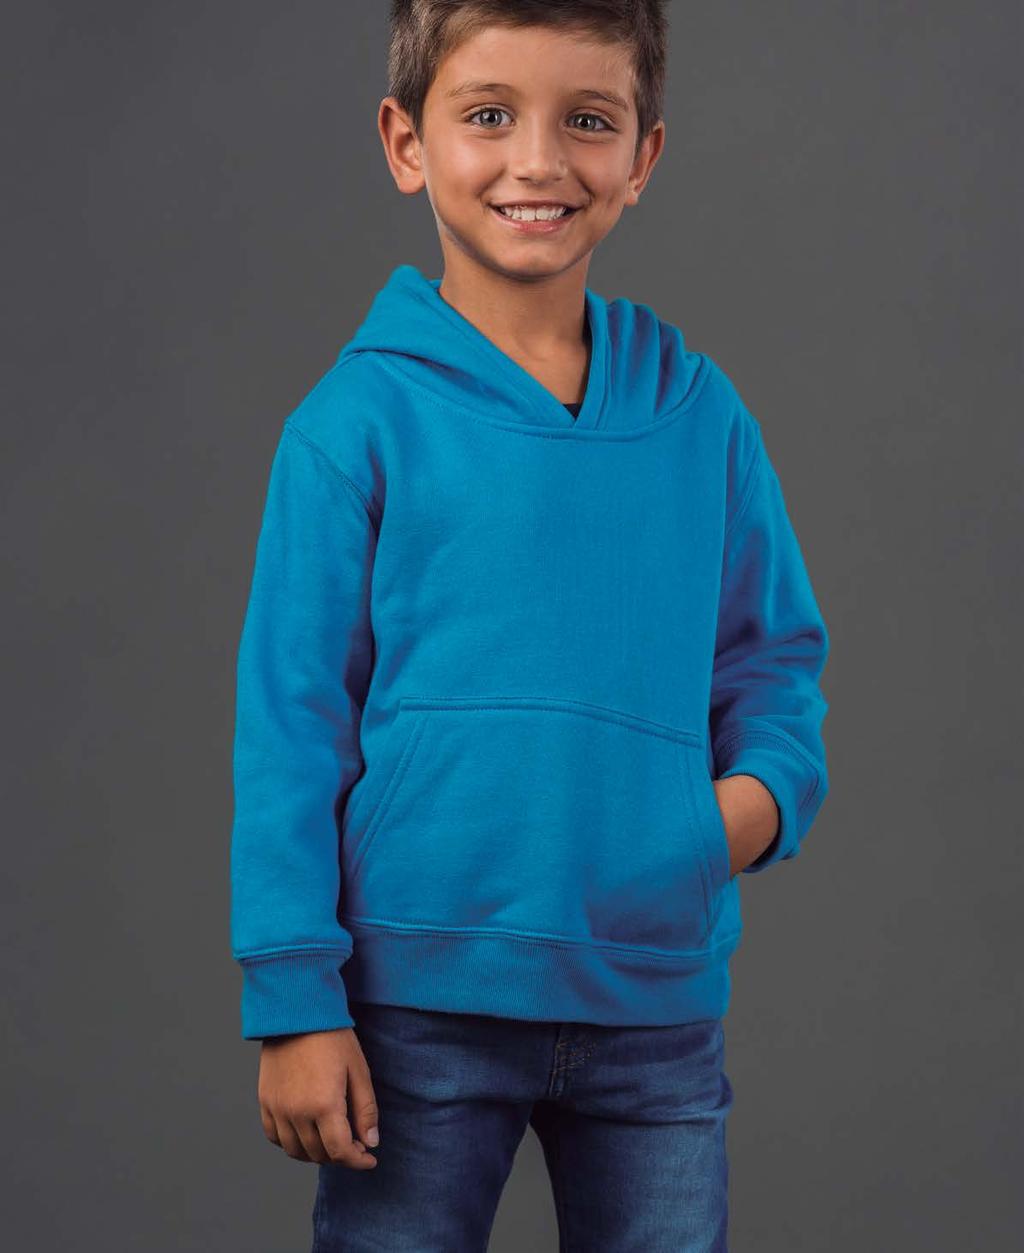 PHOENIX KIDS sweatshirt unissexo com capuz para criança 320 g/m 2 capuz segundo as normas de segurança da união